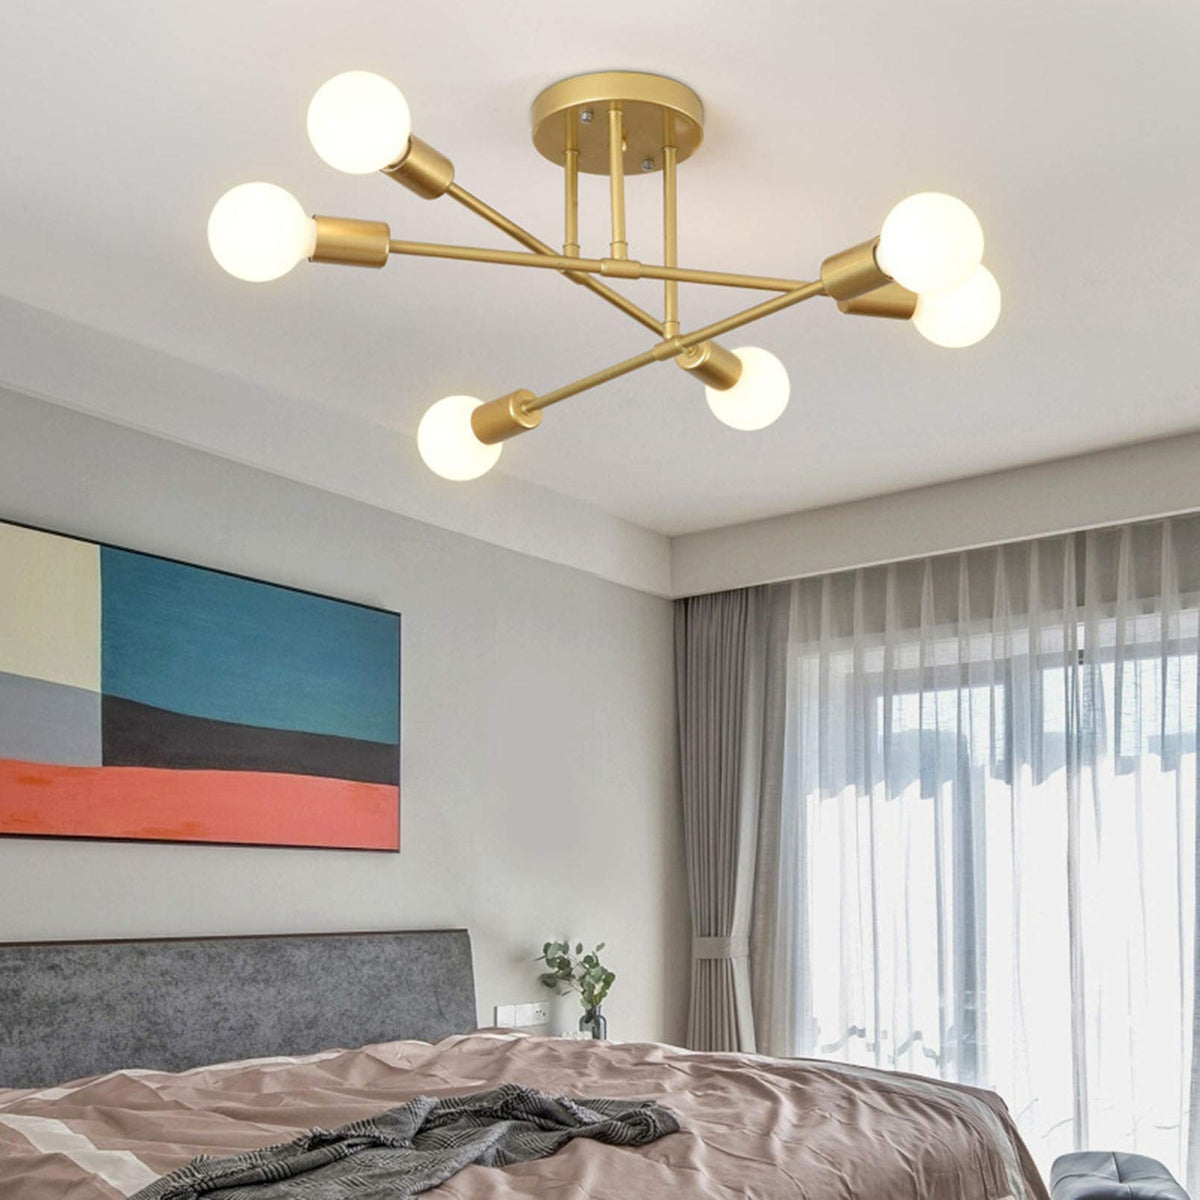 Modern Simple Living Room Ceiling Lamp